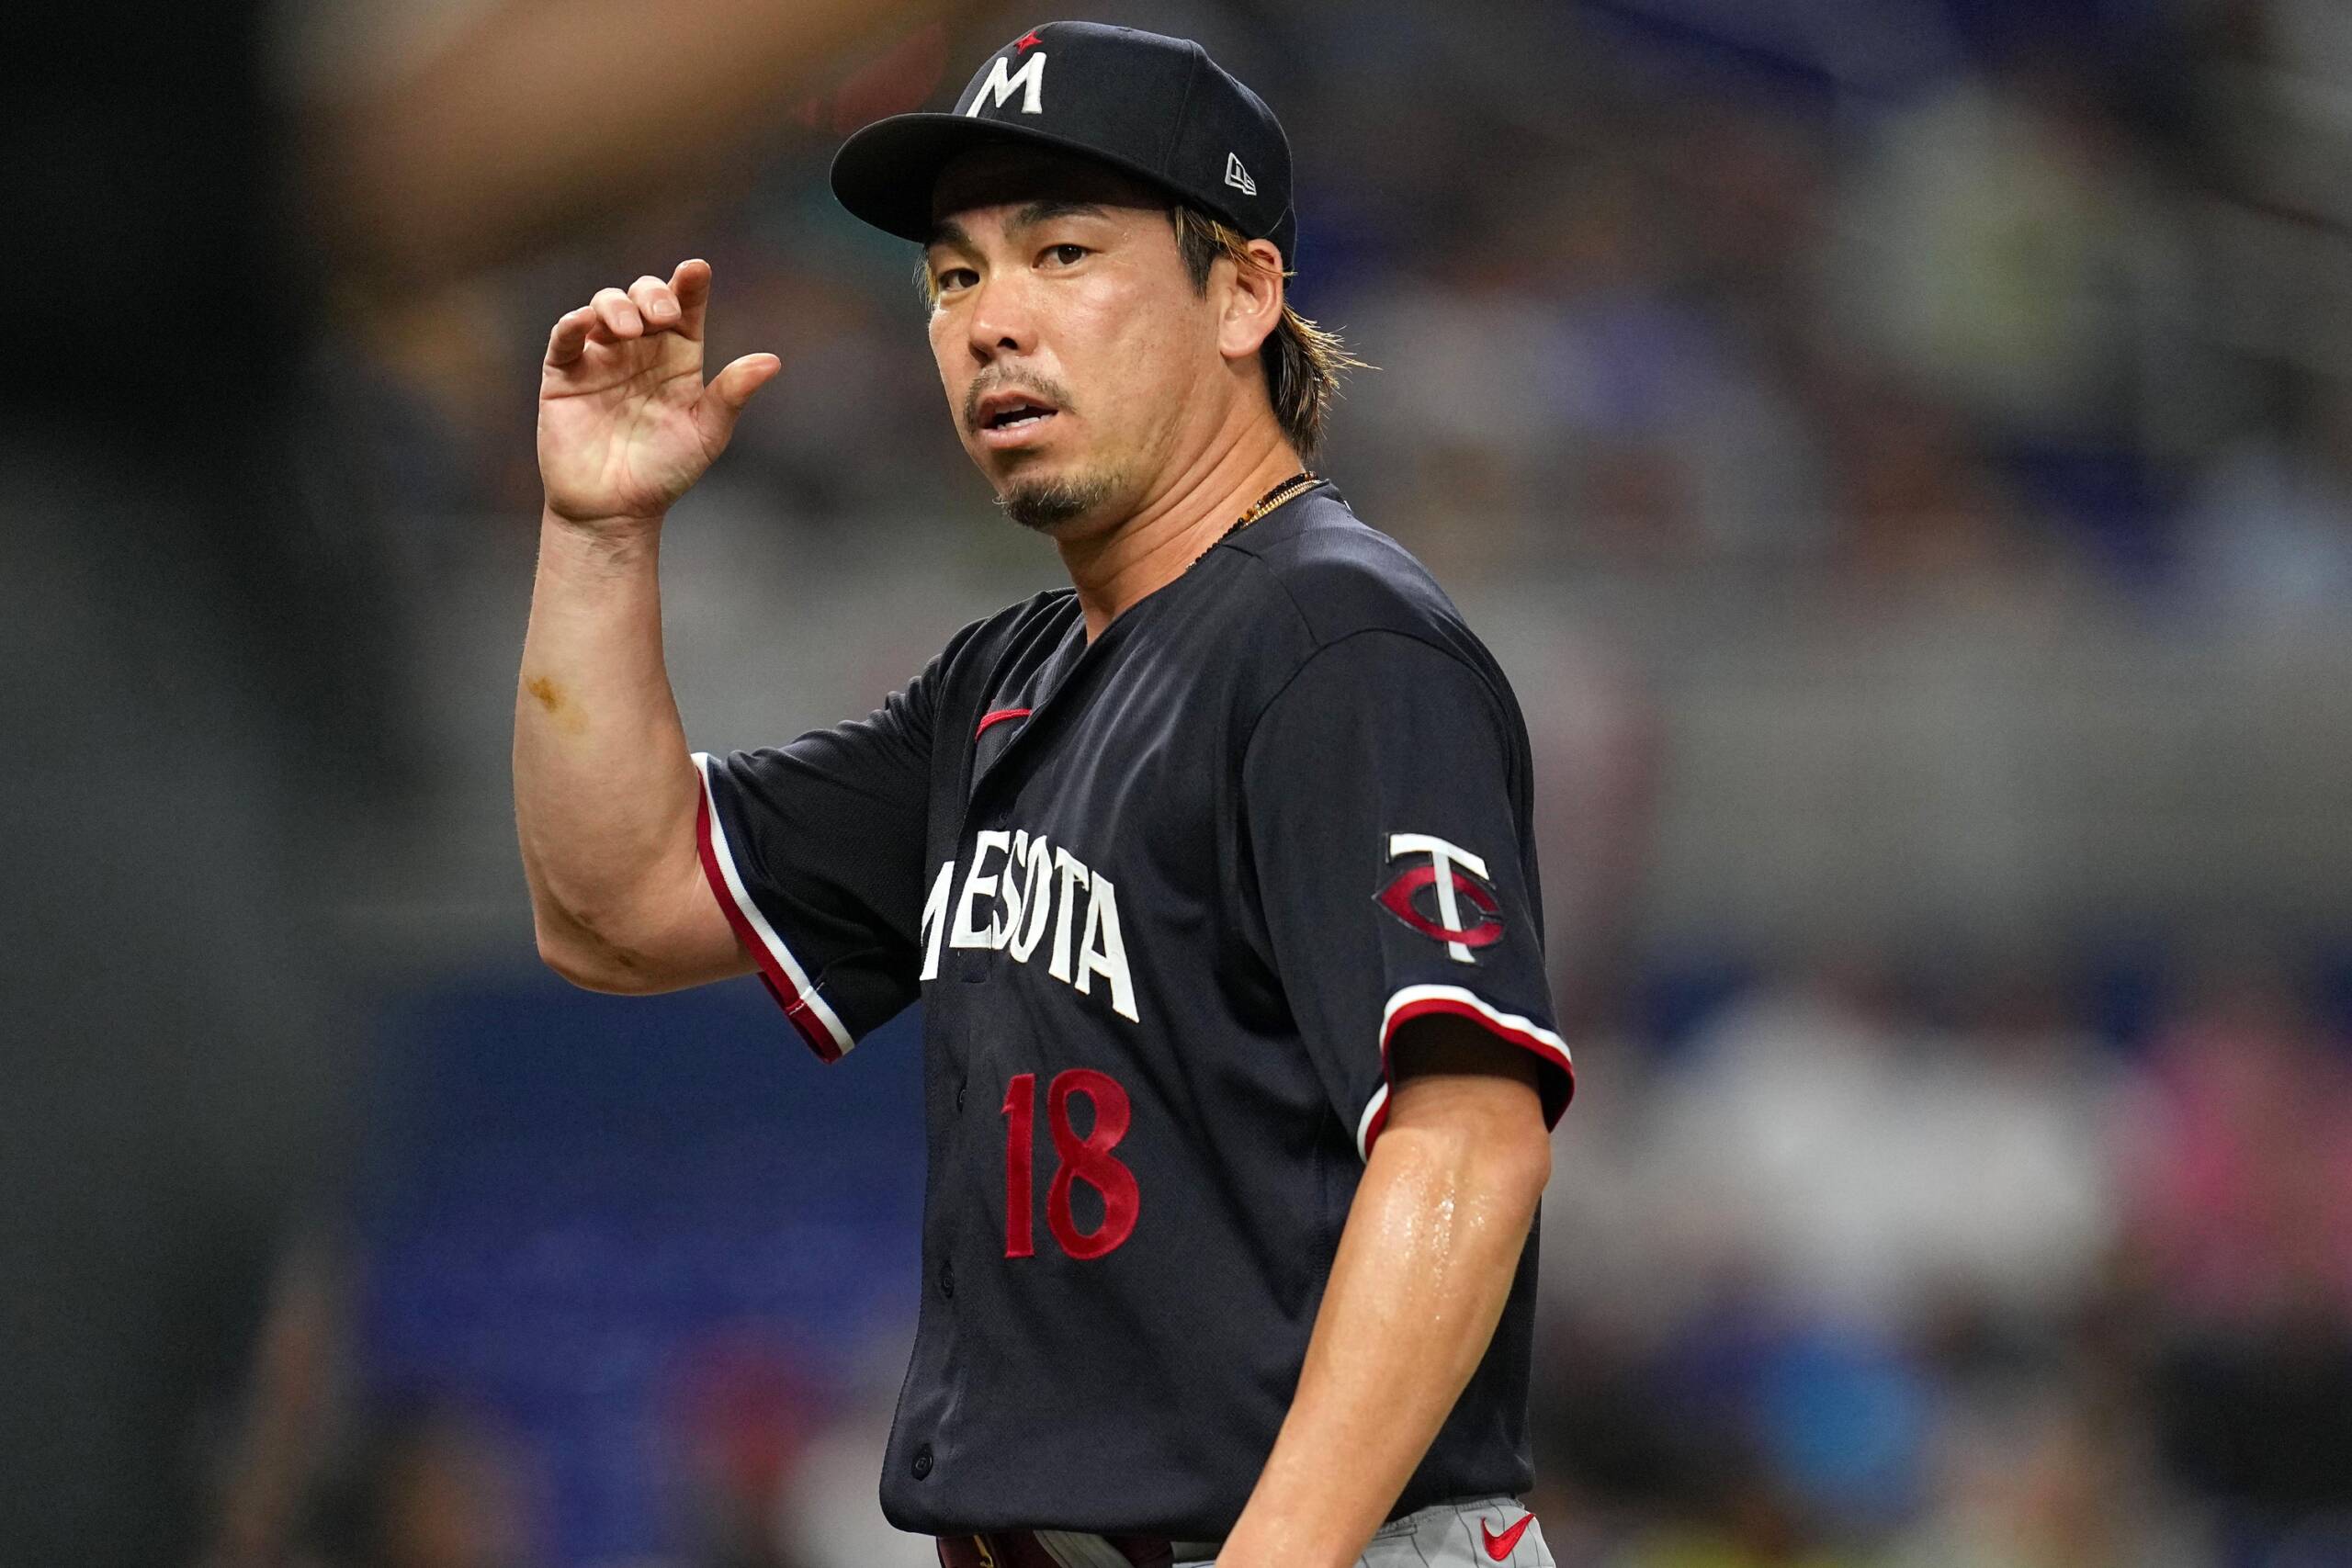 Baseball: Kenta Maeda takes loss but continues strong return from injury